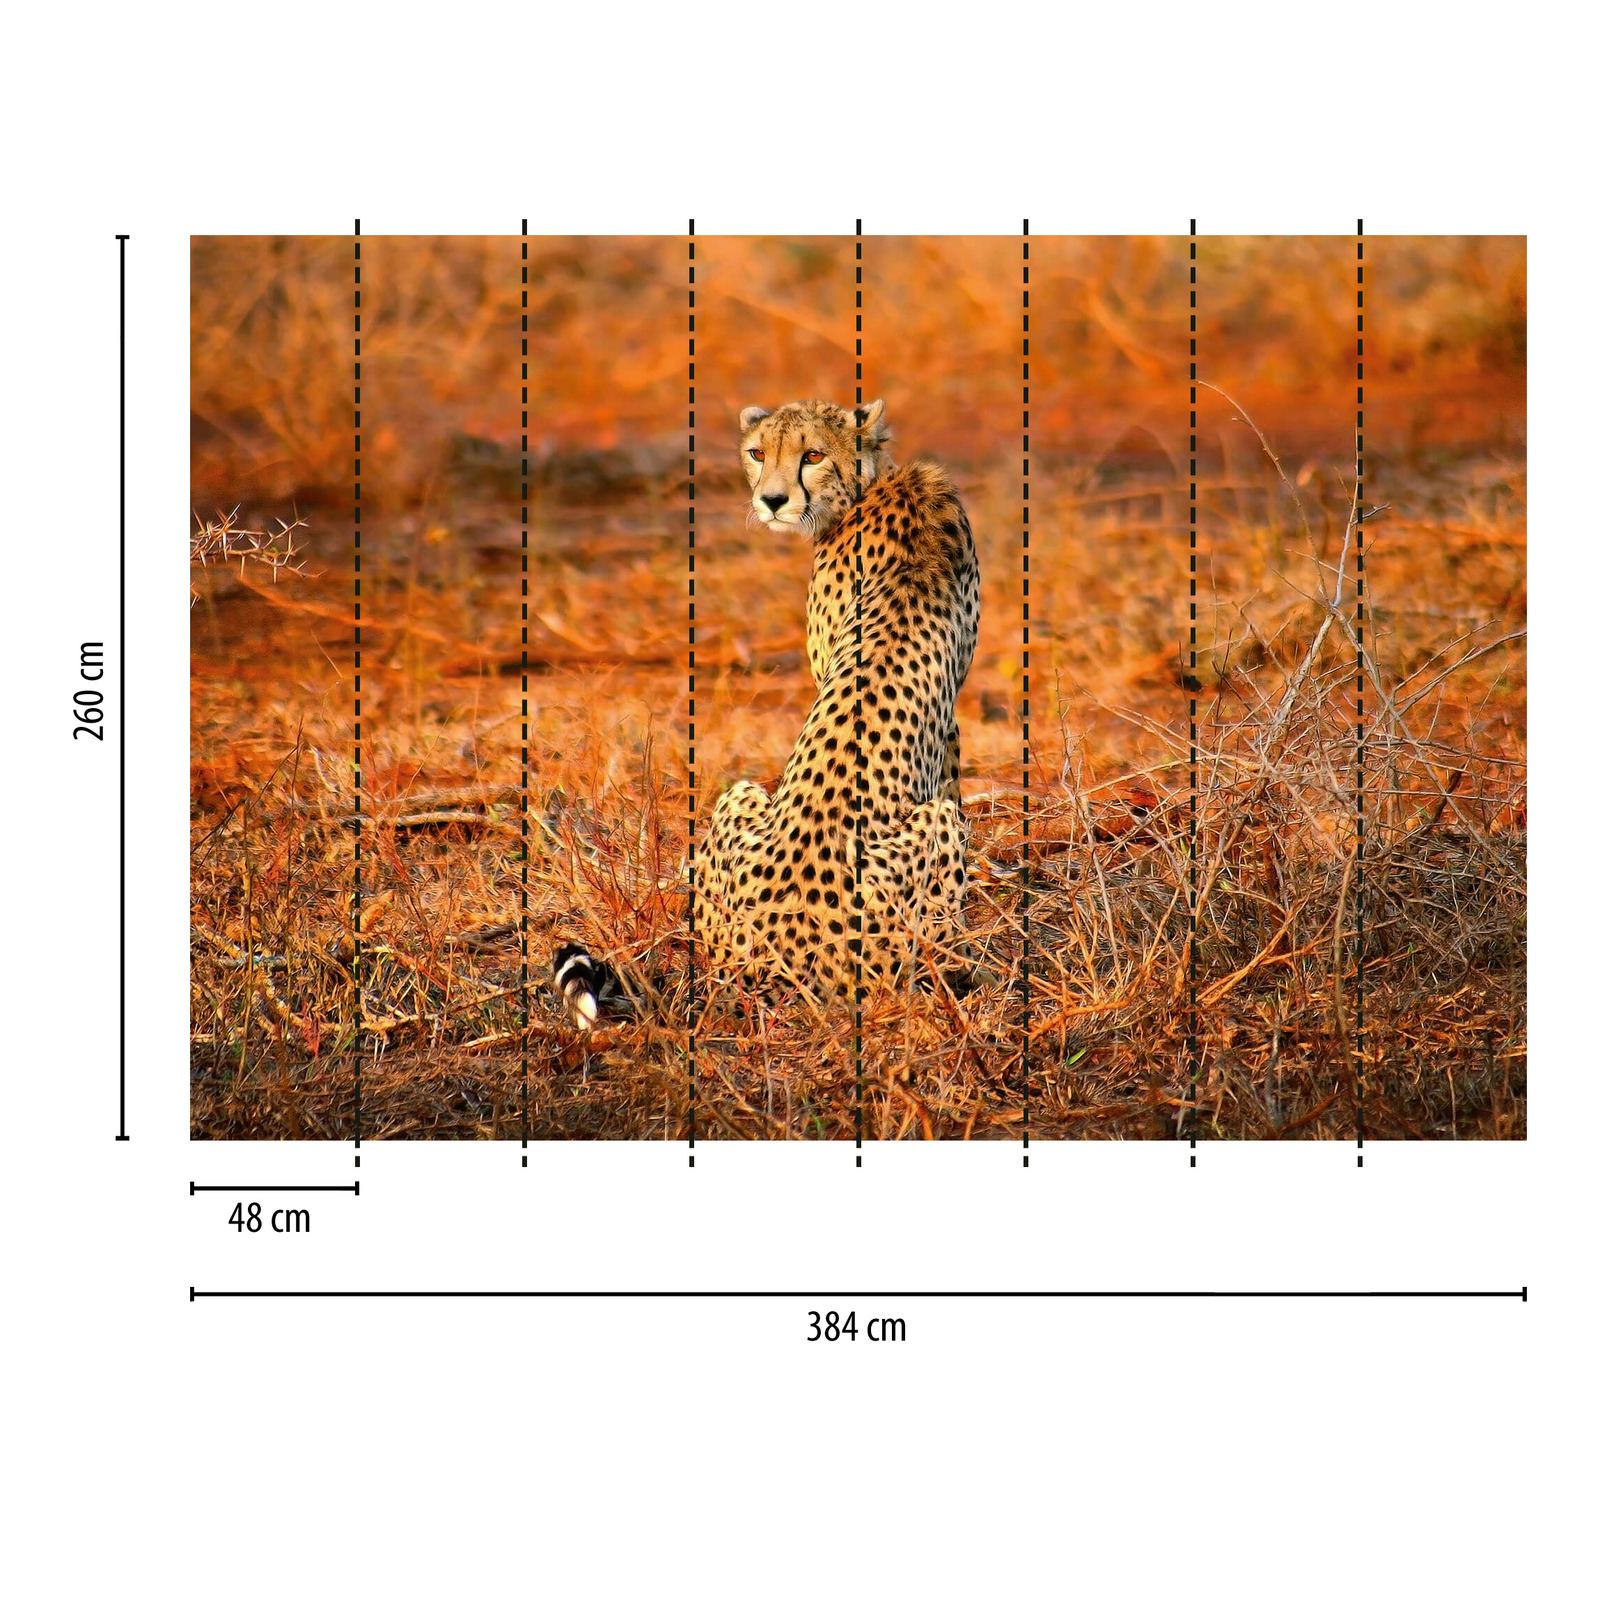             Fototapete Leopard in Natur – Gelb, Orange, Schwarz
        